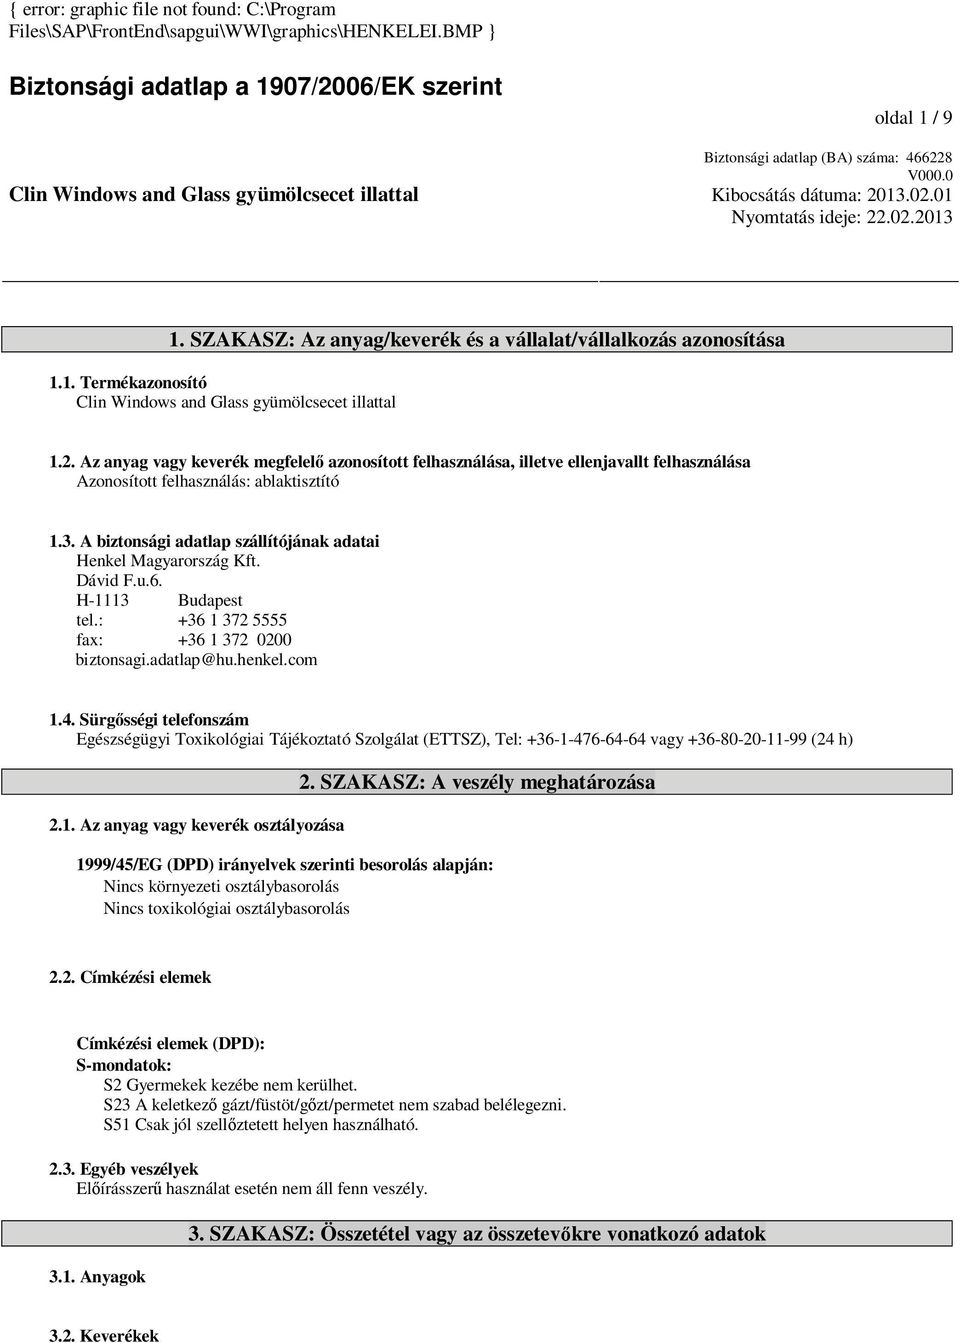 Biztonsági adatlap a 1907/2006/EK szerint - PDF Ingyenes letöltés